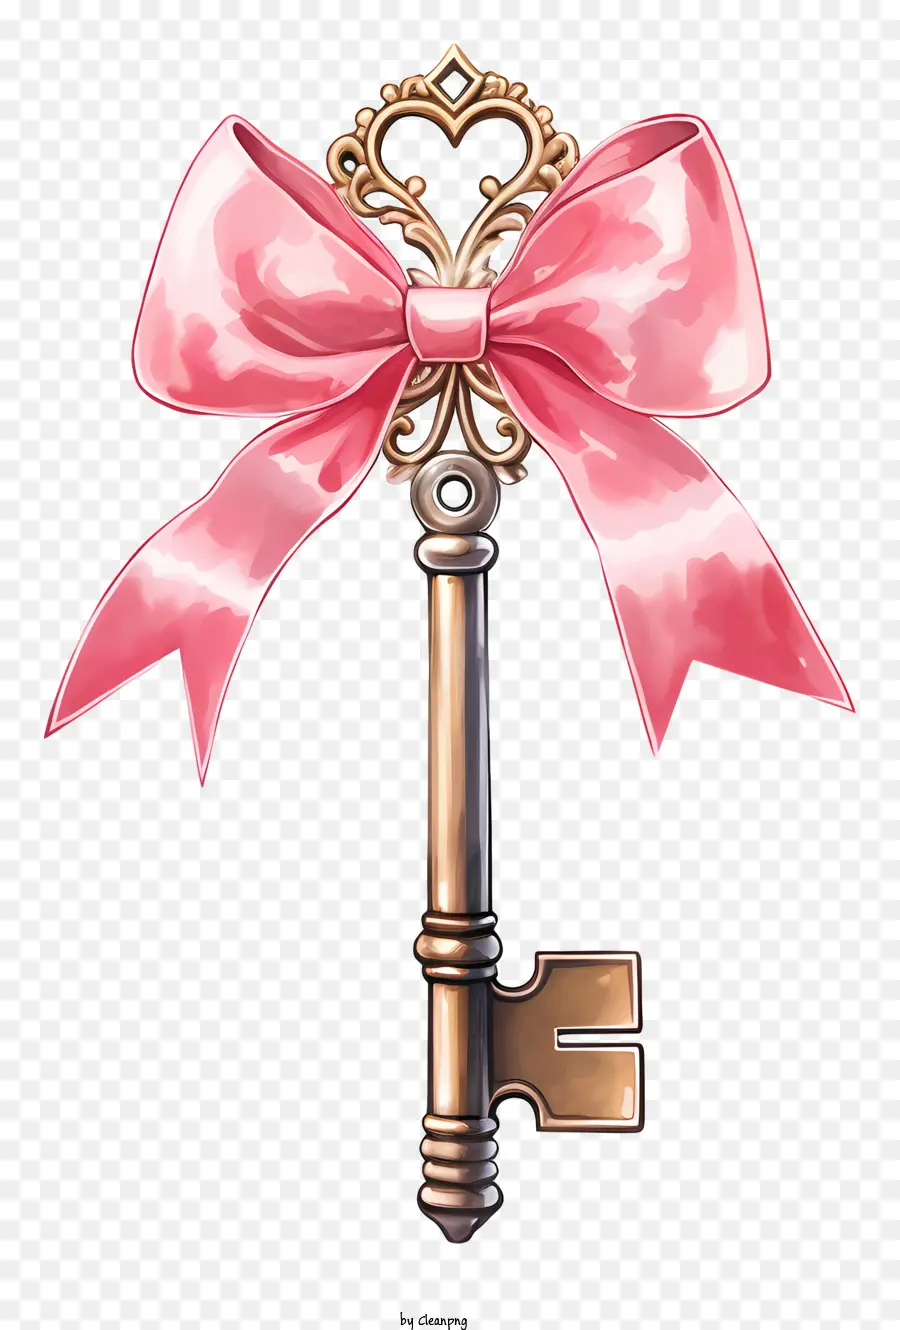 Chiave Tasta di grande chiave di grande chiave rosa Chiave metallica metallica metallica - Close-up di chiave intricata, lucida e decorata con prua